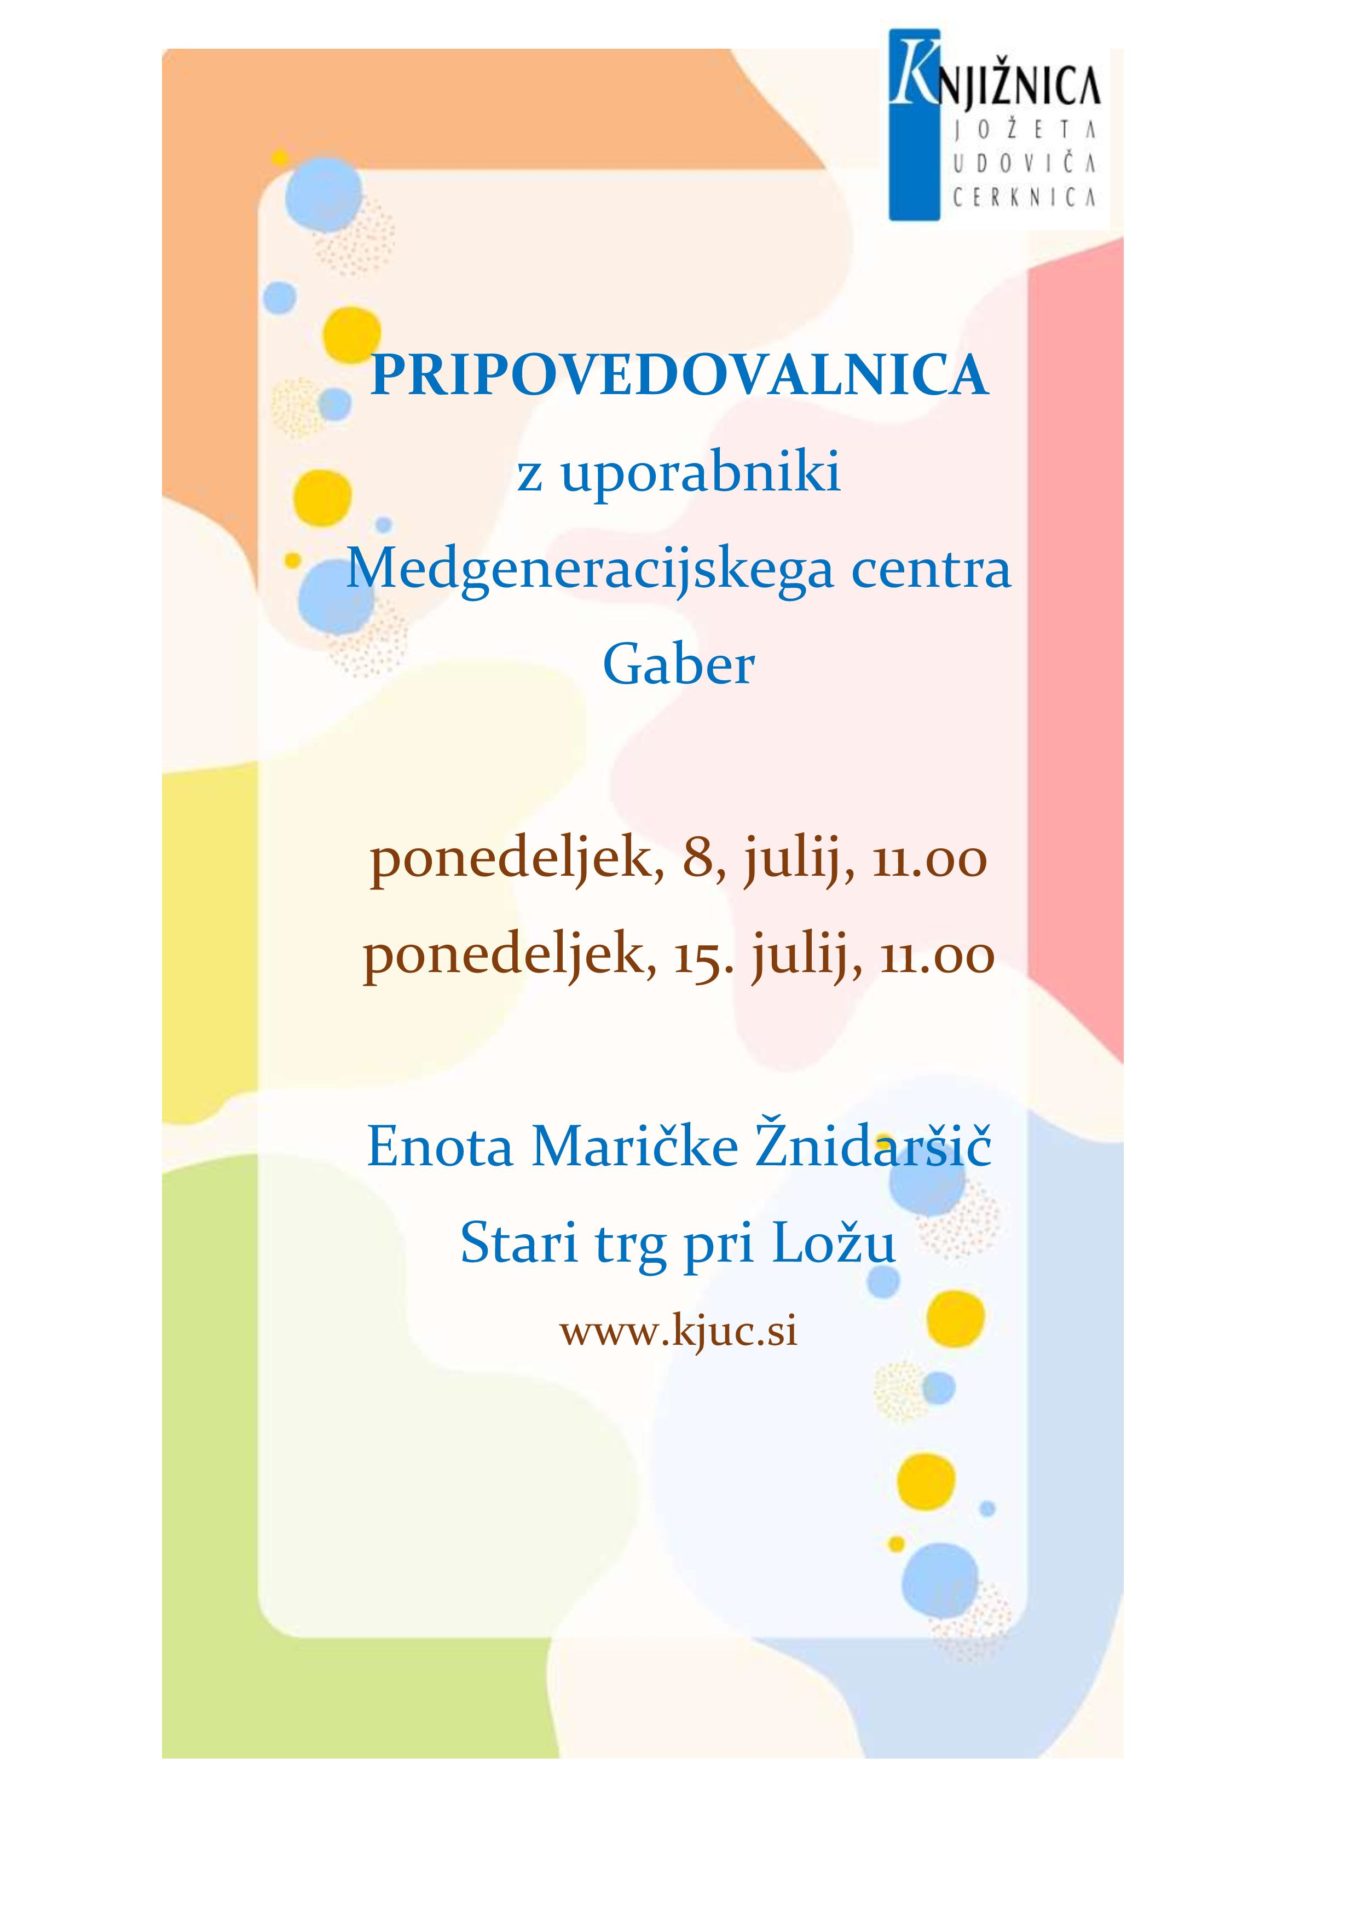 PRIPOVEDOVALNICA.doc page 001 - VSI DOGODKI